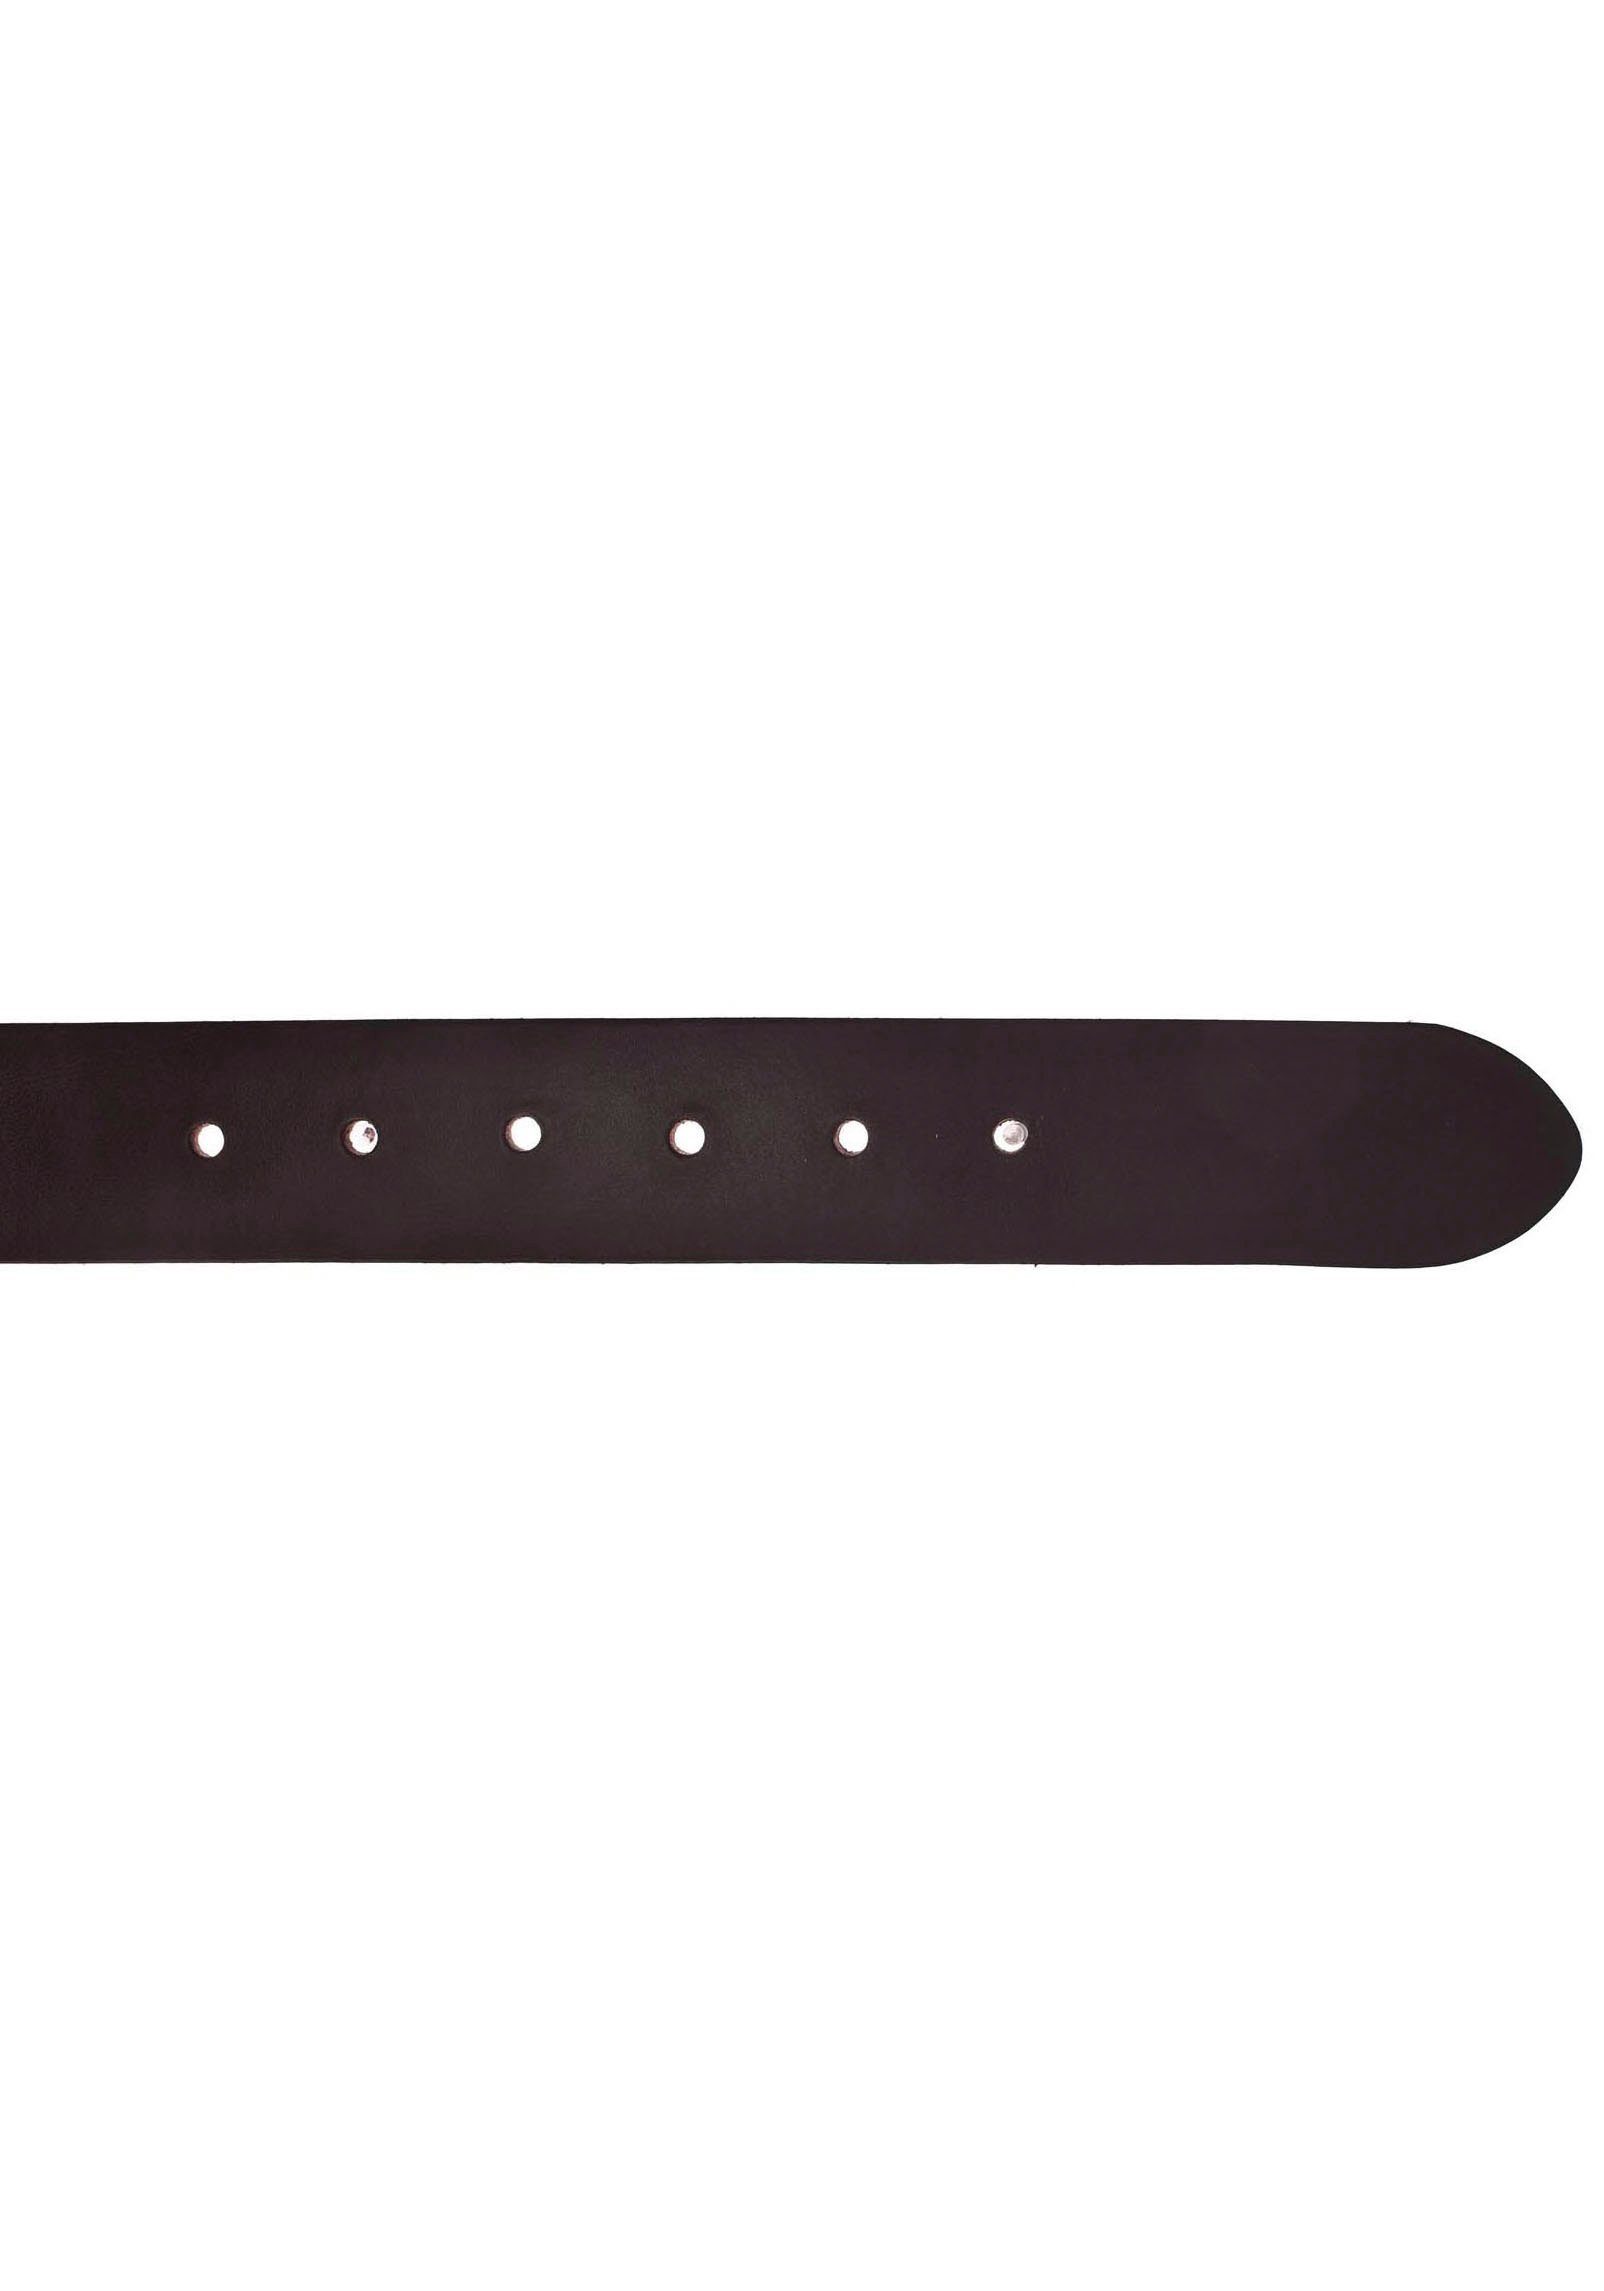 b.belt Ledergürtel Animal-Design dunkelbraun Schließe mit